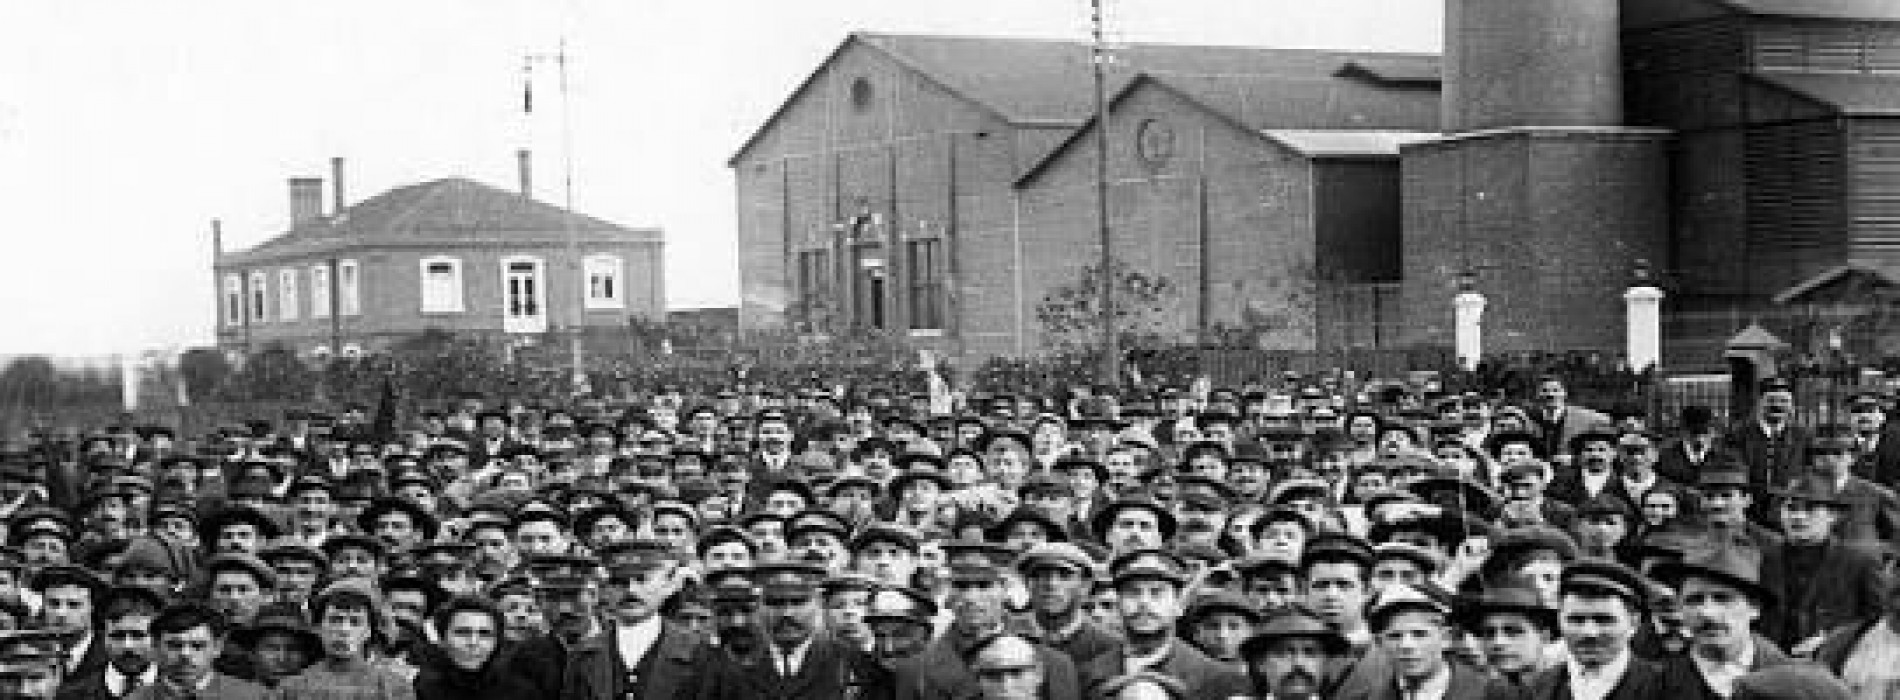 Cineasta Carlos Pronzato fala da nova obra sobre os cem anos da greve geral de 1917